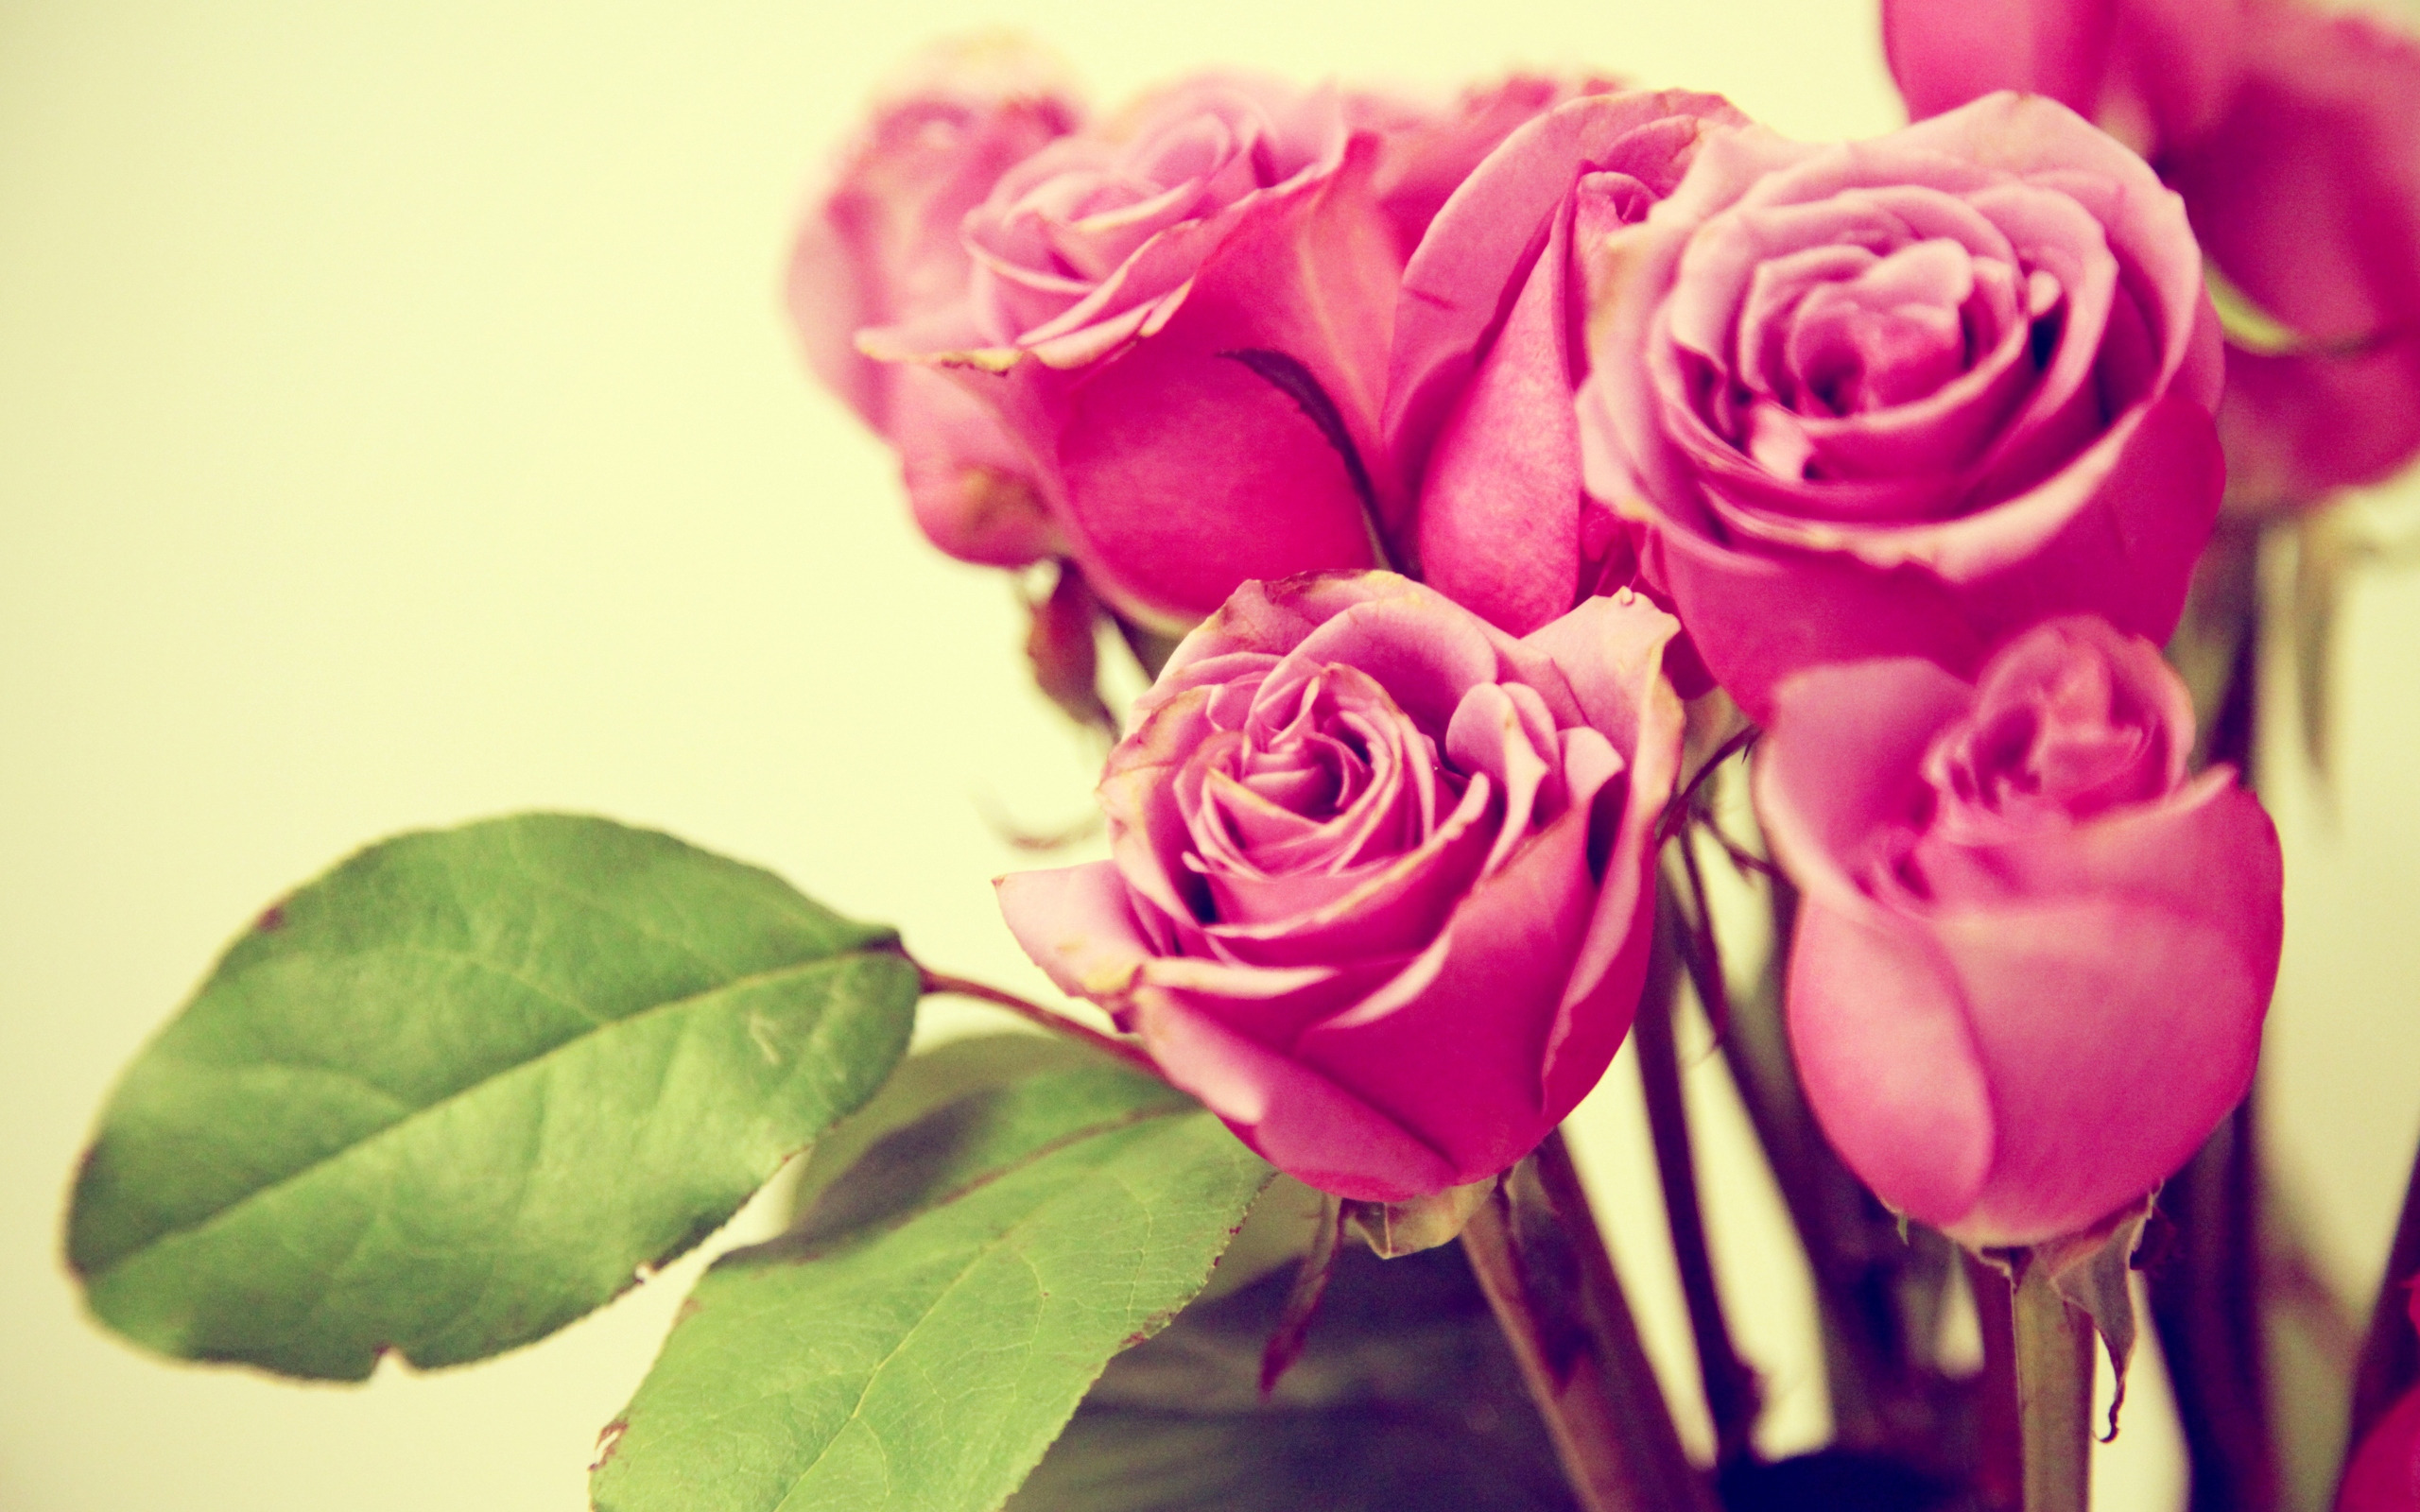 earth, rose, flower, pink rose, flowers wallpaper for mobile